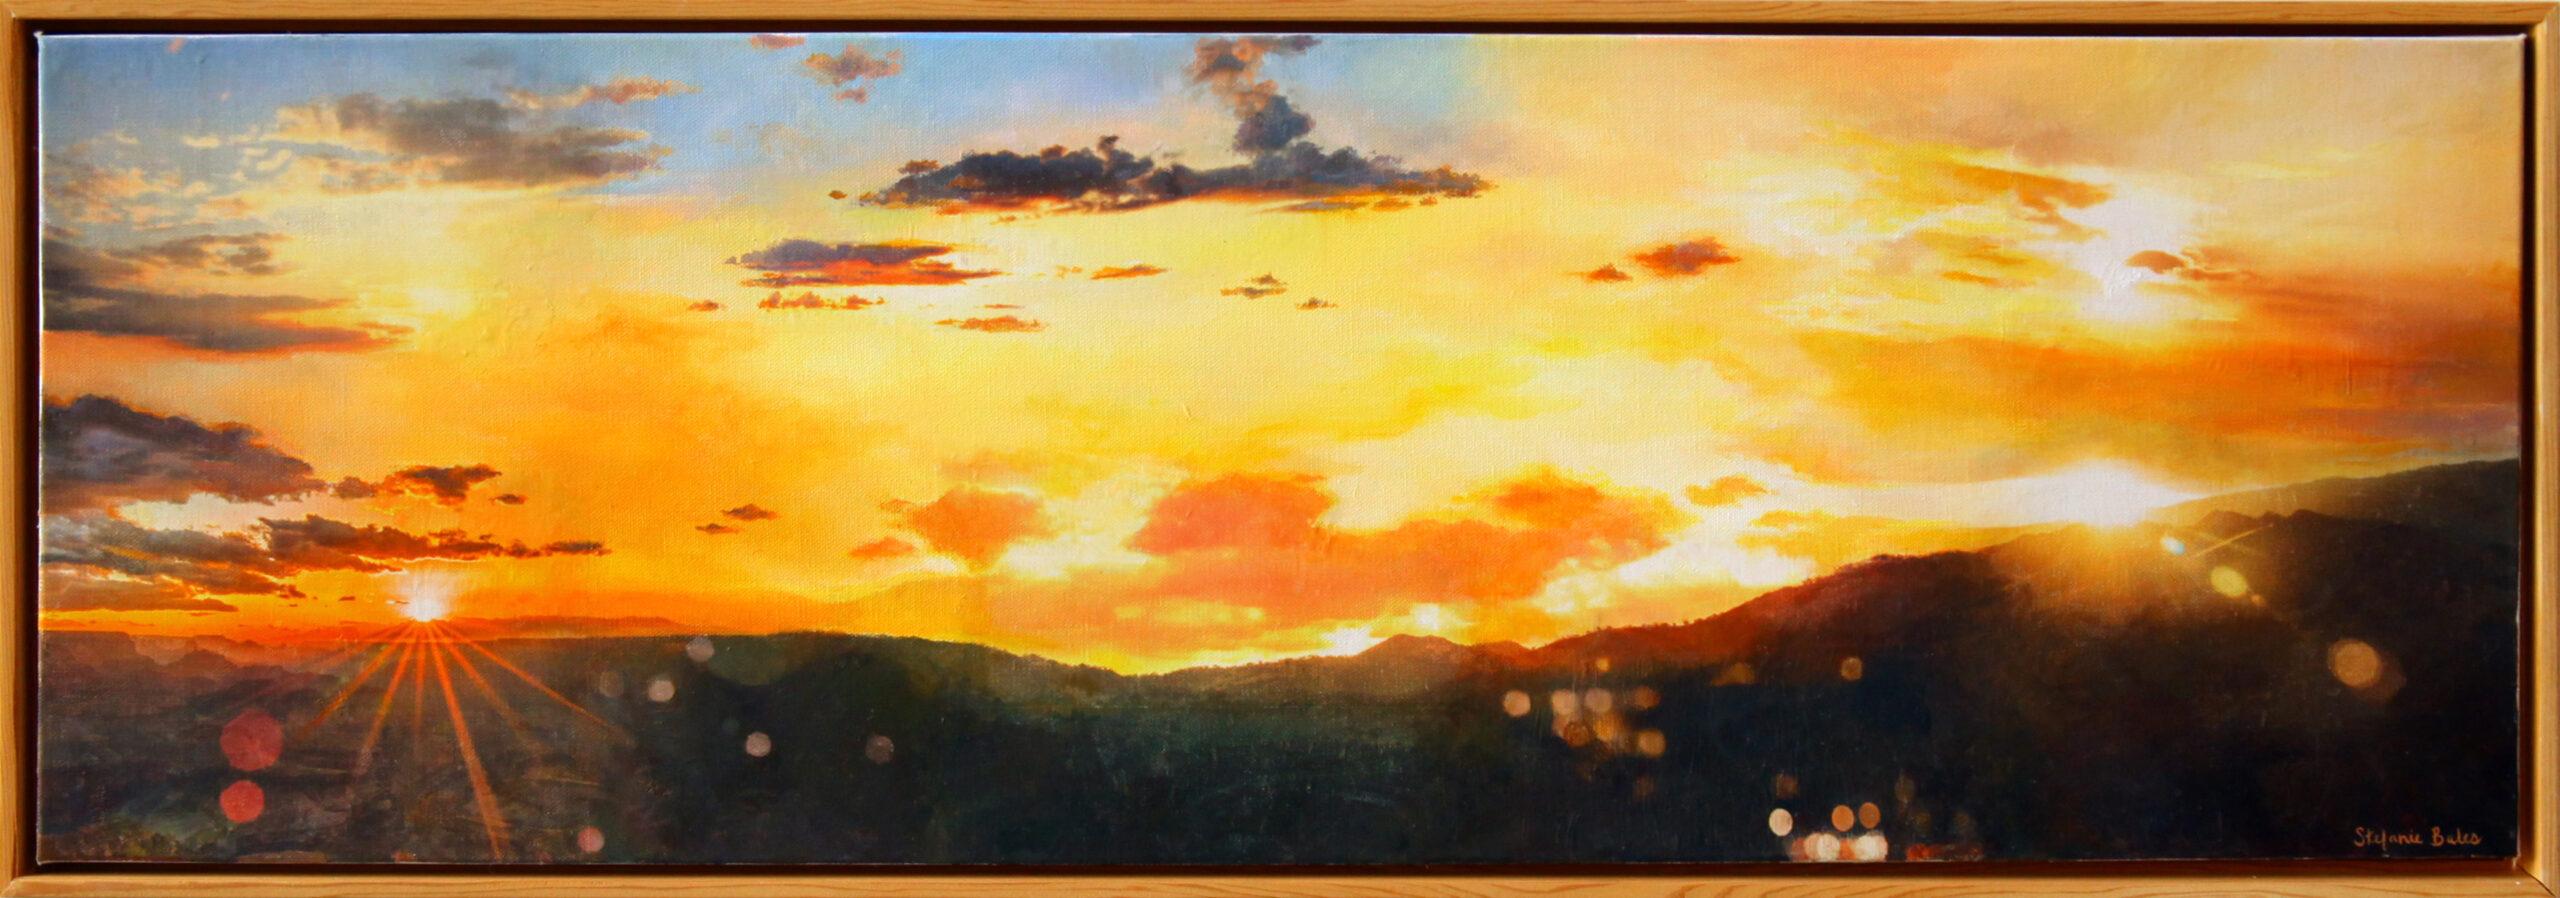 Landscape Painting Stefanie Bales - Peinture impressionniste à l'acrylique et technique mixte sur toile « Let There Be Light »